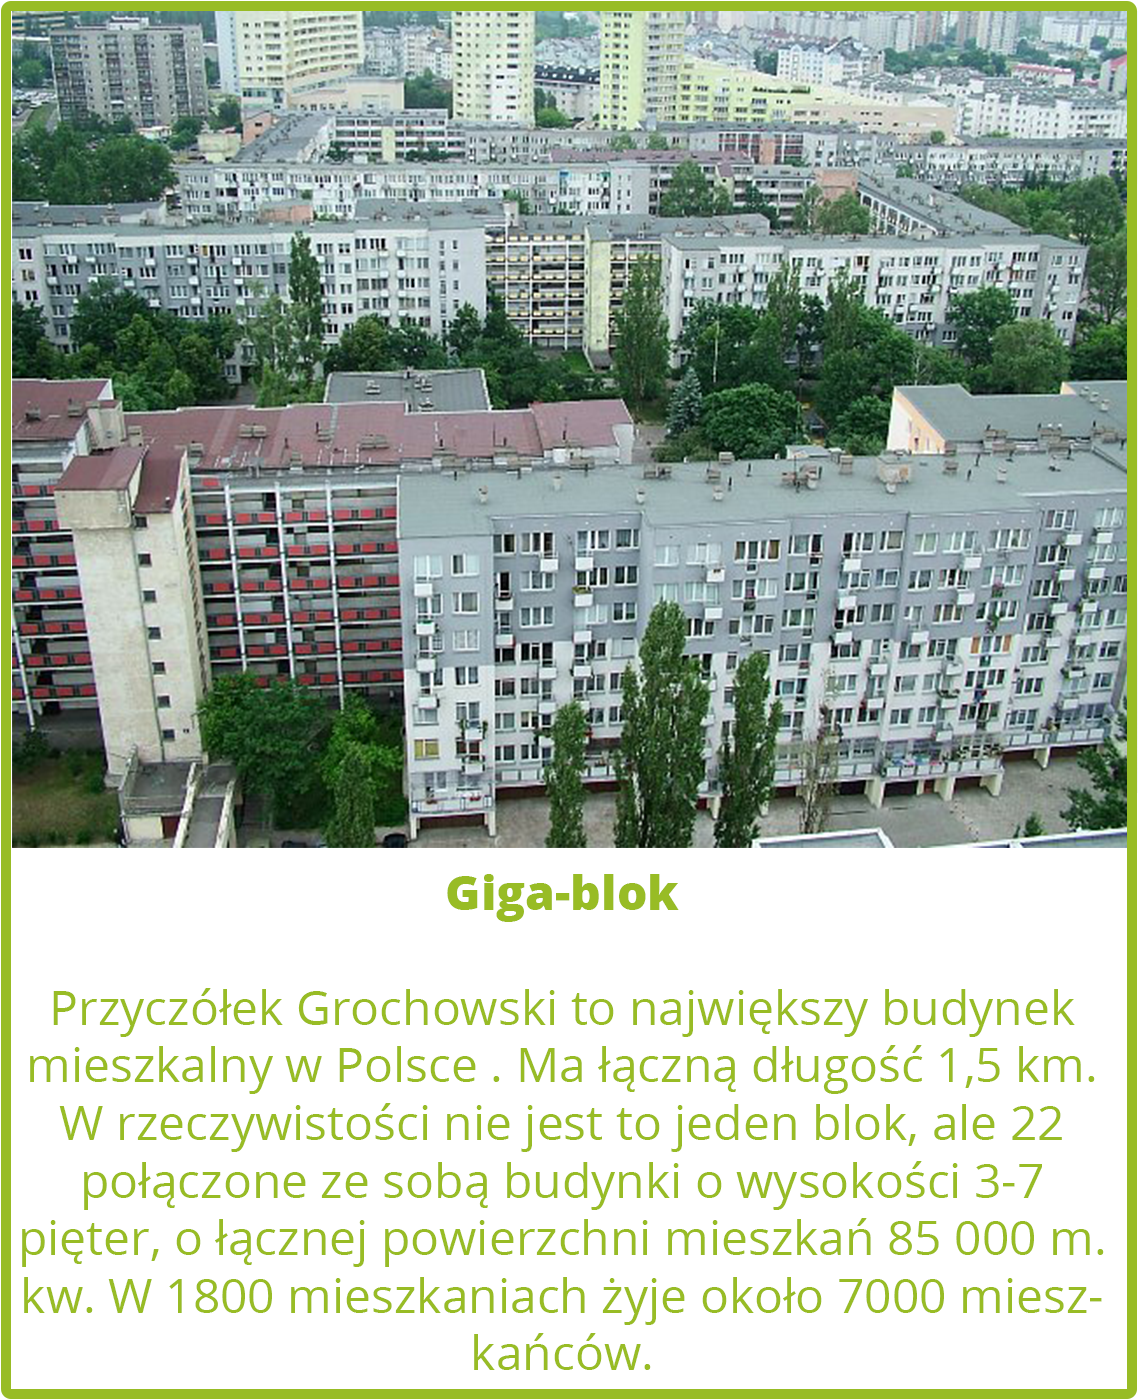 Największy blok w Polsce